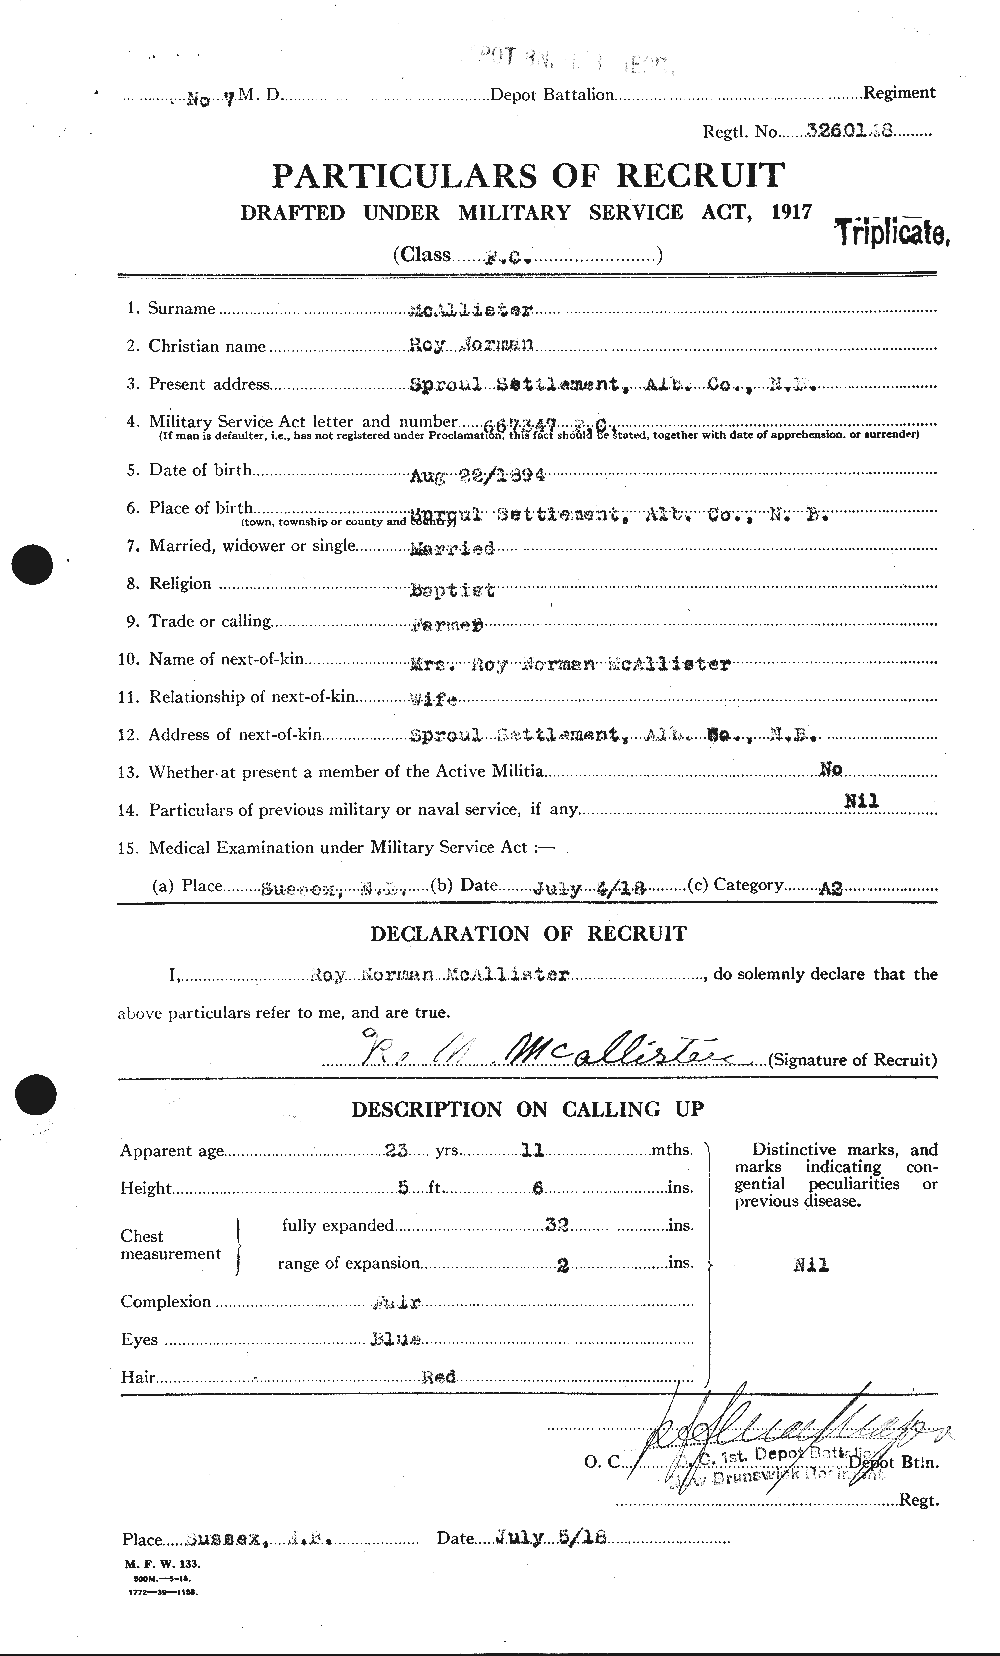 Dossiers du Personnel de la Première Guerre mondiale - CEC 515997a